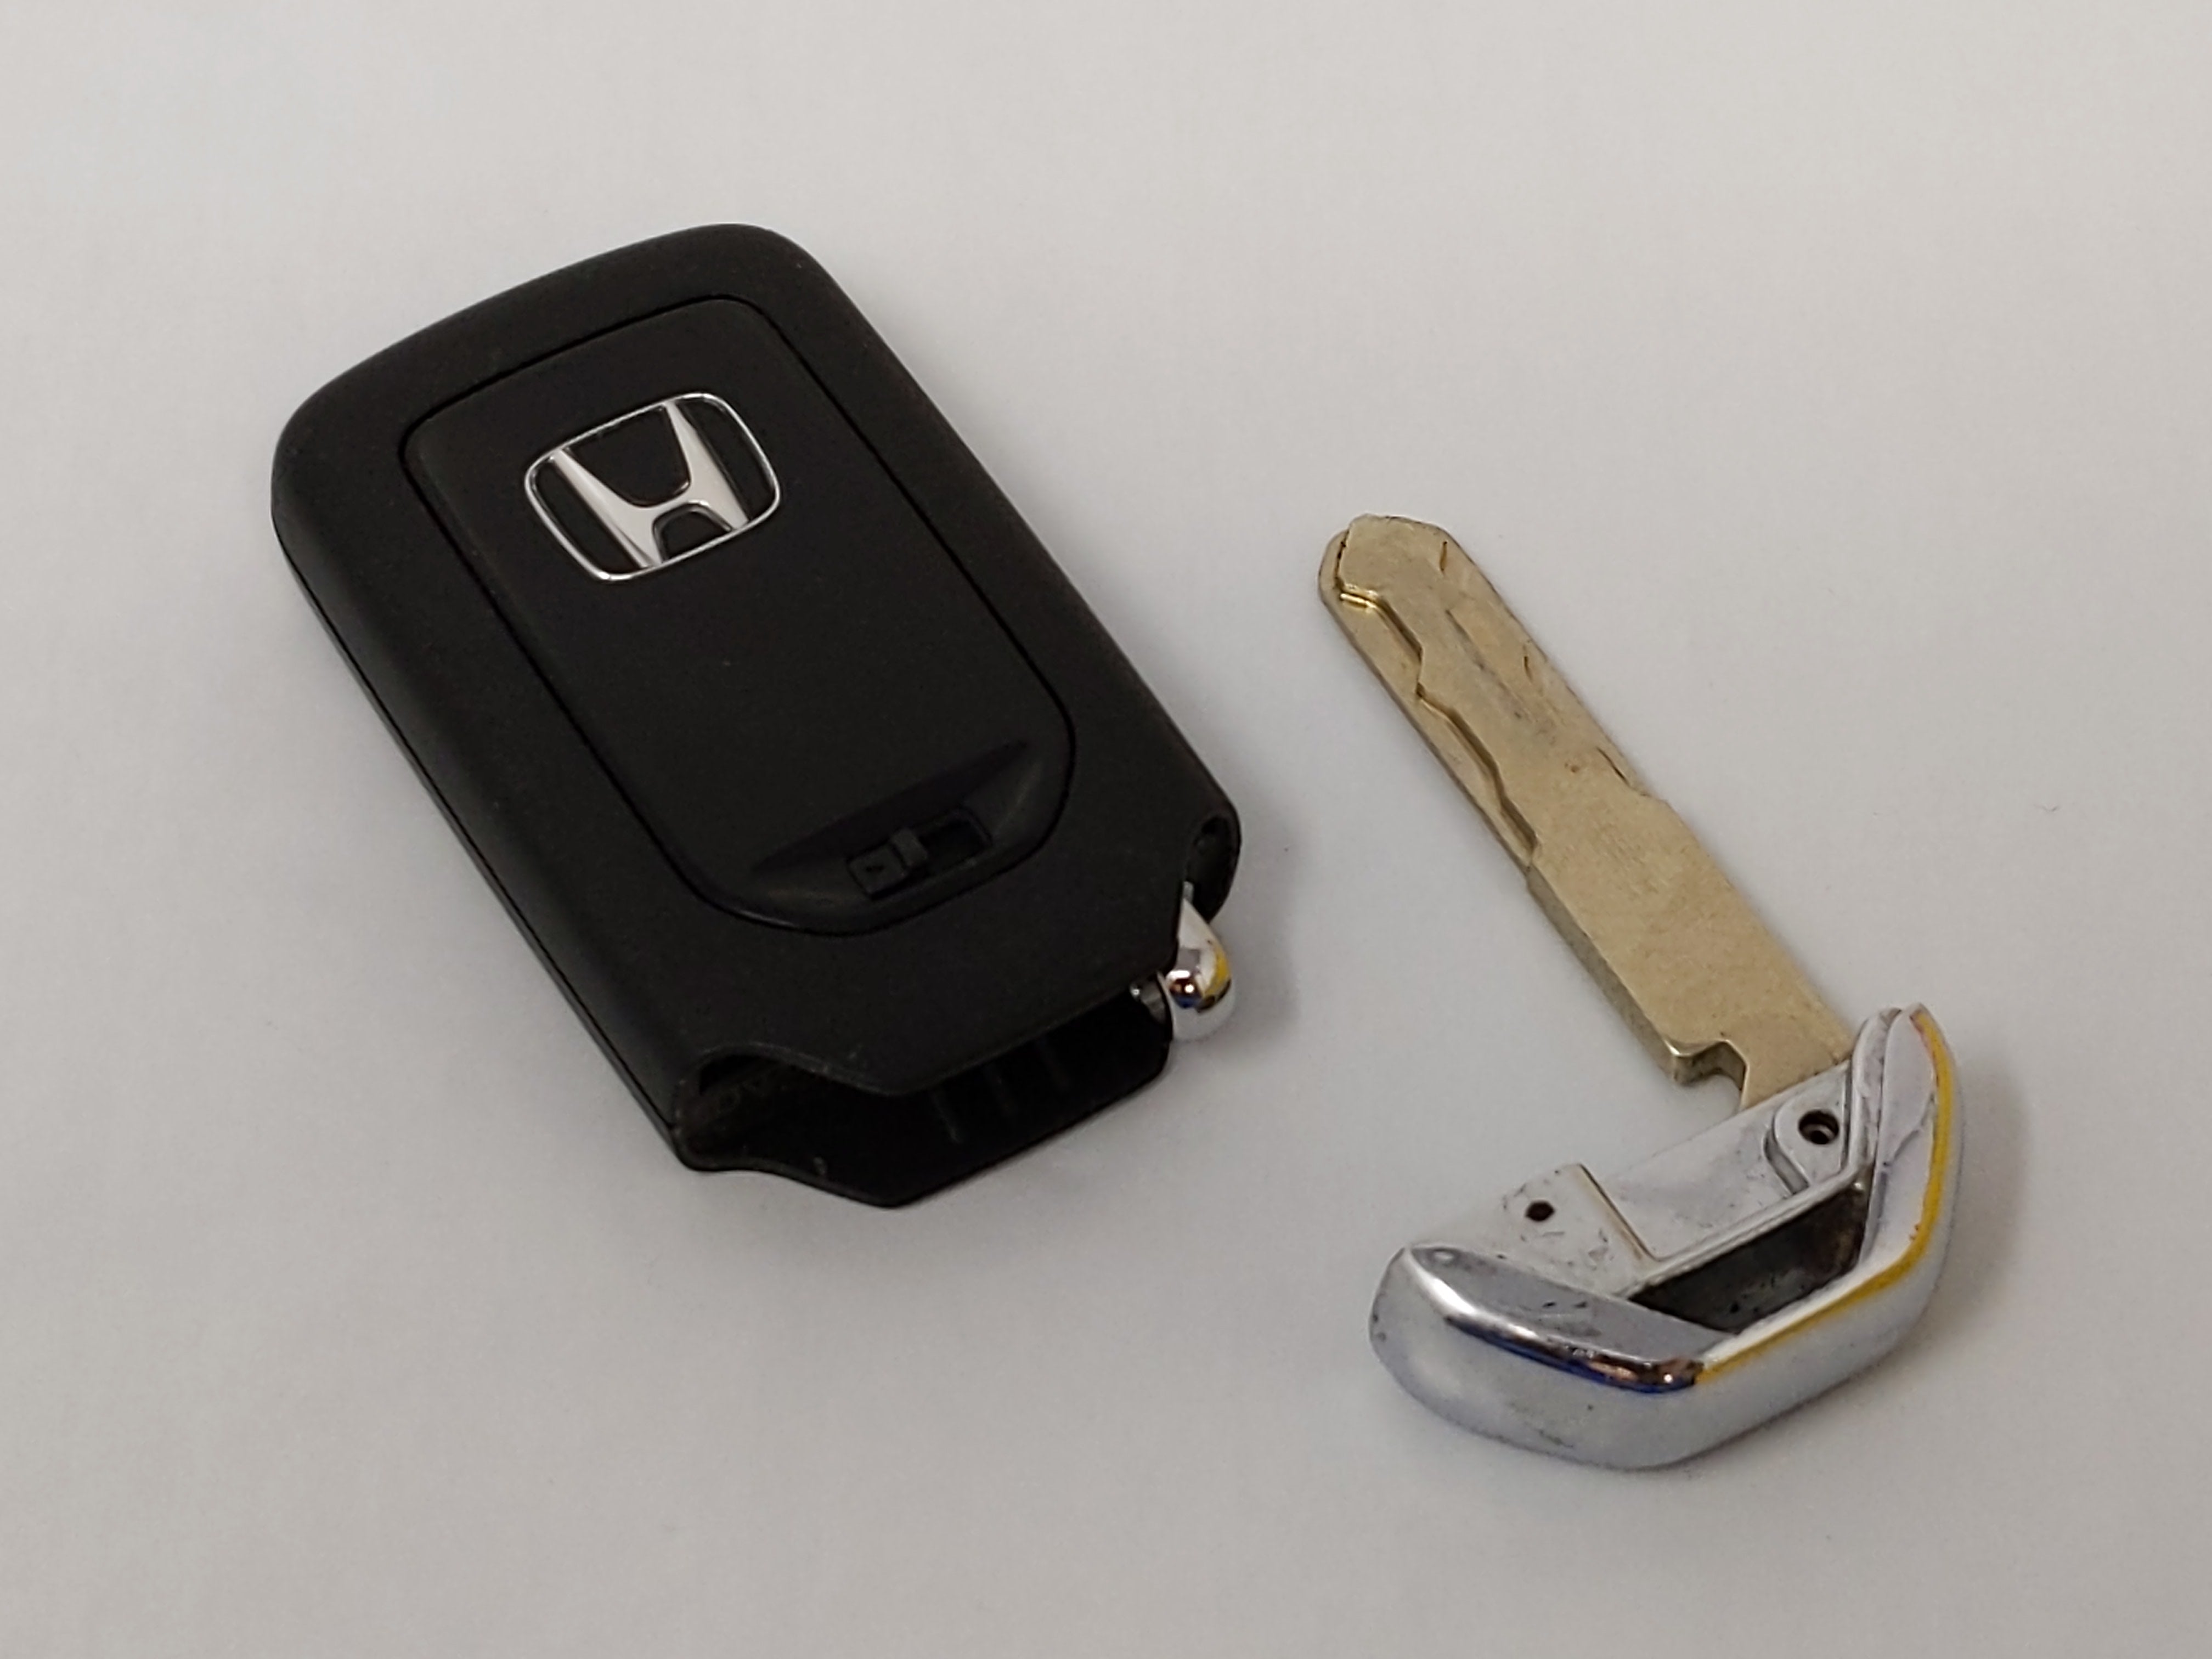 2018-2020 Honda Accord Keyless Entry Remote Cwtwb1g0090 72147-Tva-A0 5 - Oemusedautoparts1.com